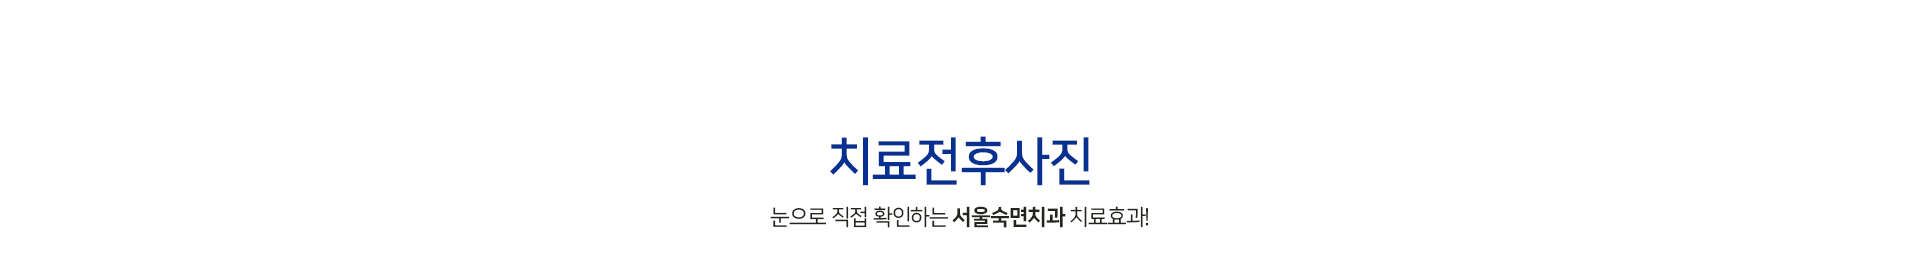 치료전후사진-눈으로-직접-확인하는-서울오치과-치료효과